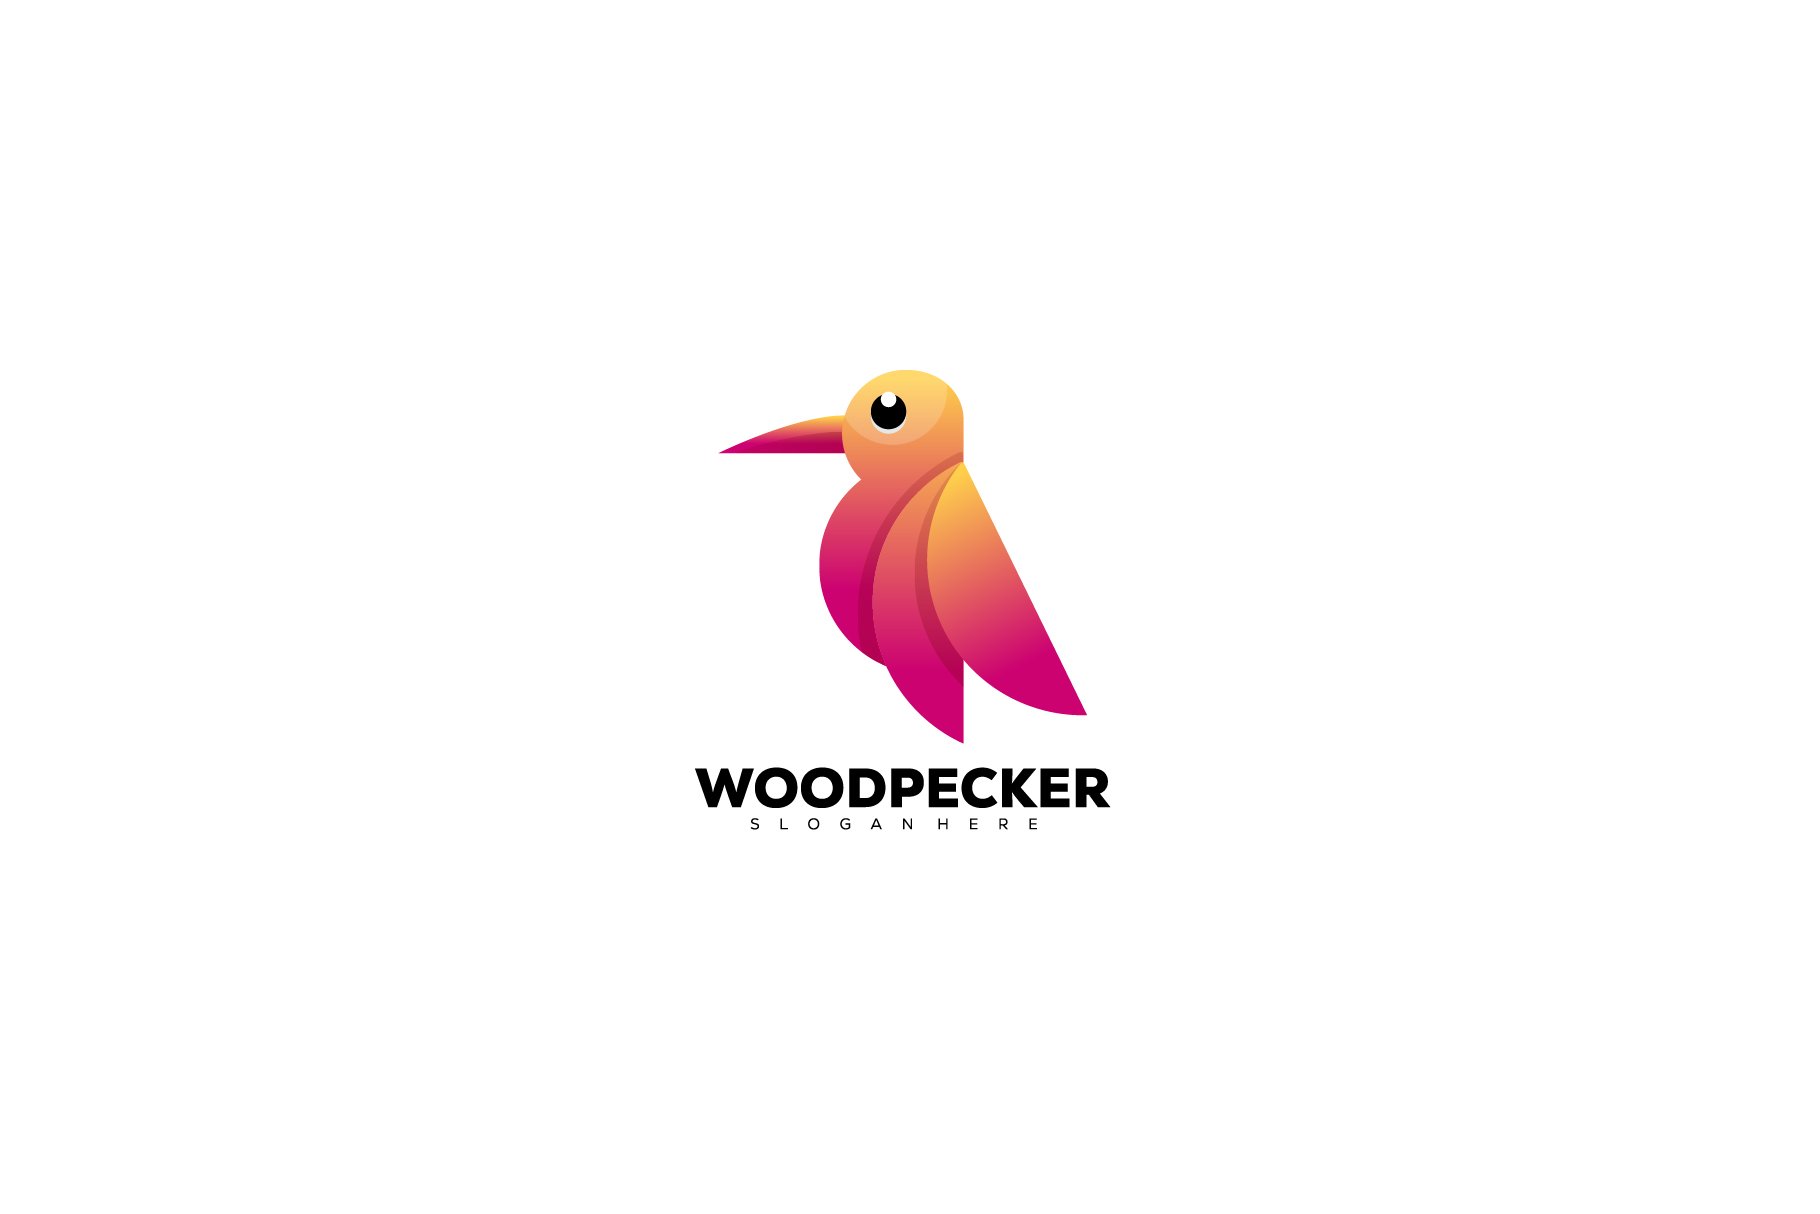 woodpecker logo colorful design grad cover image.